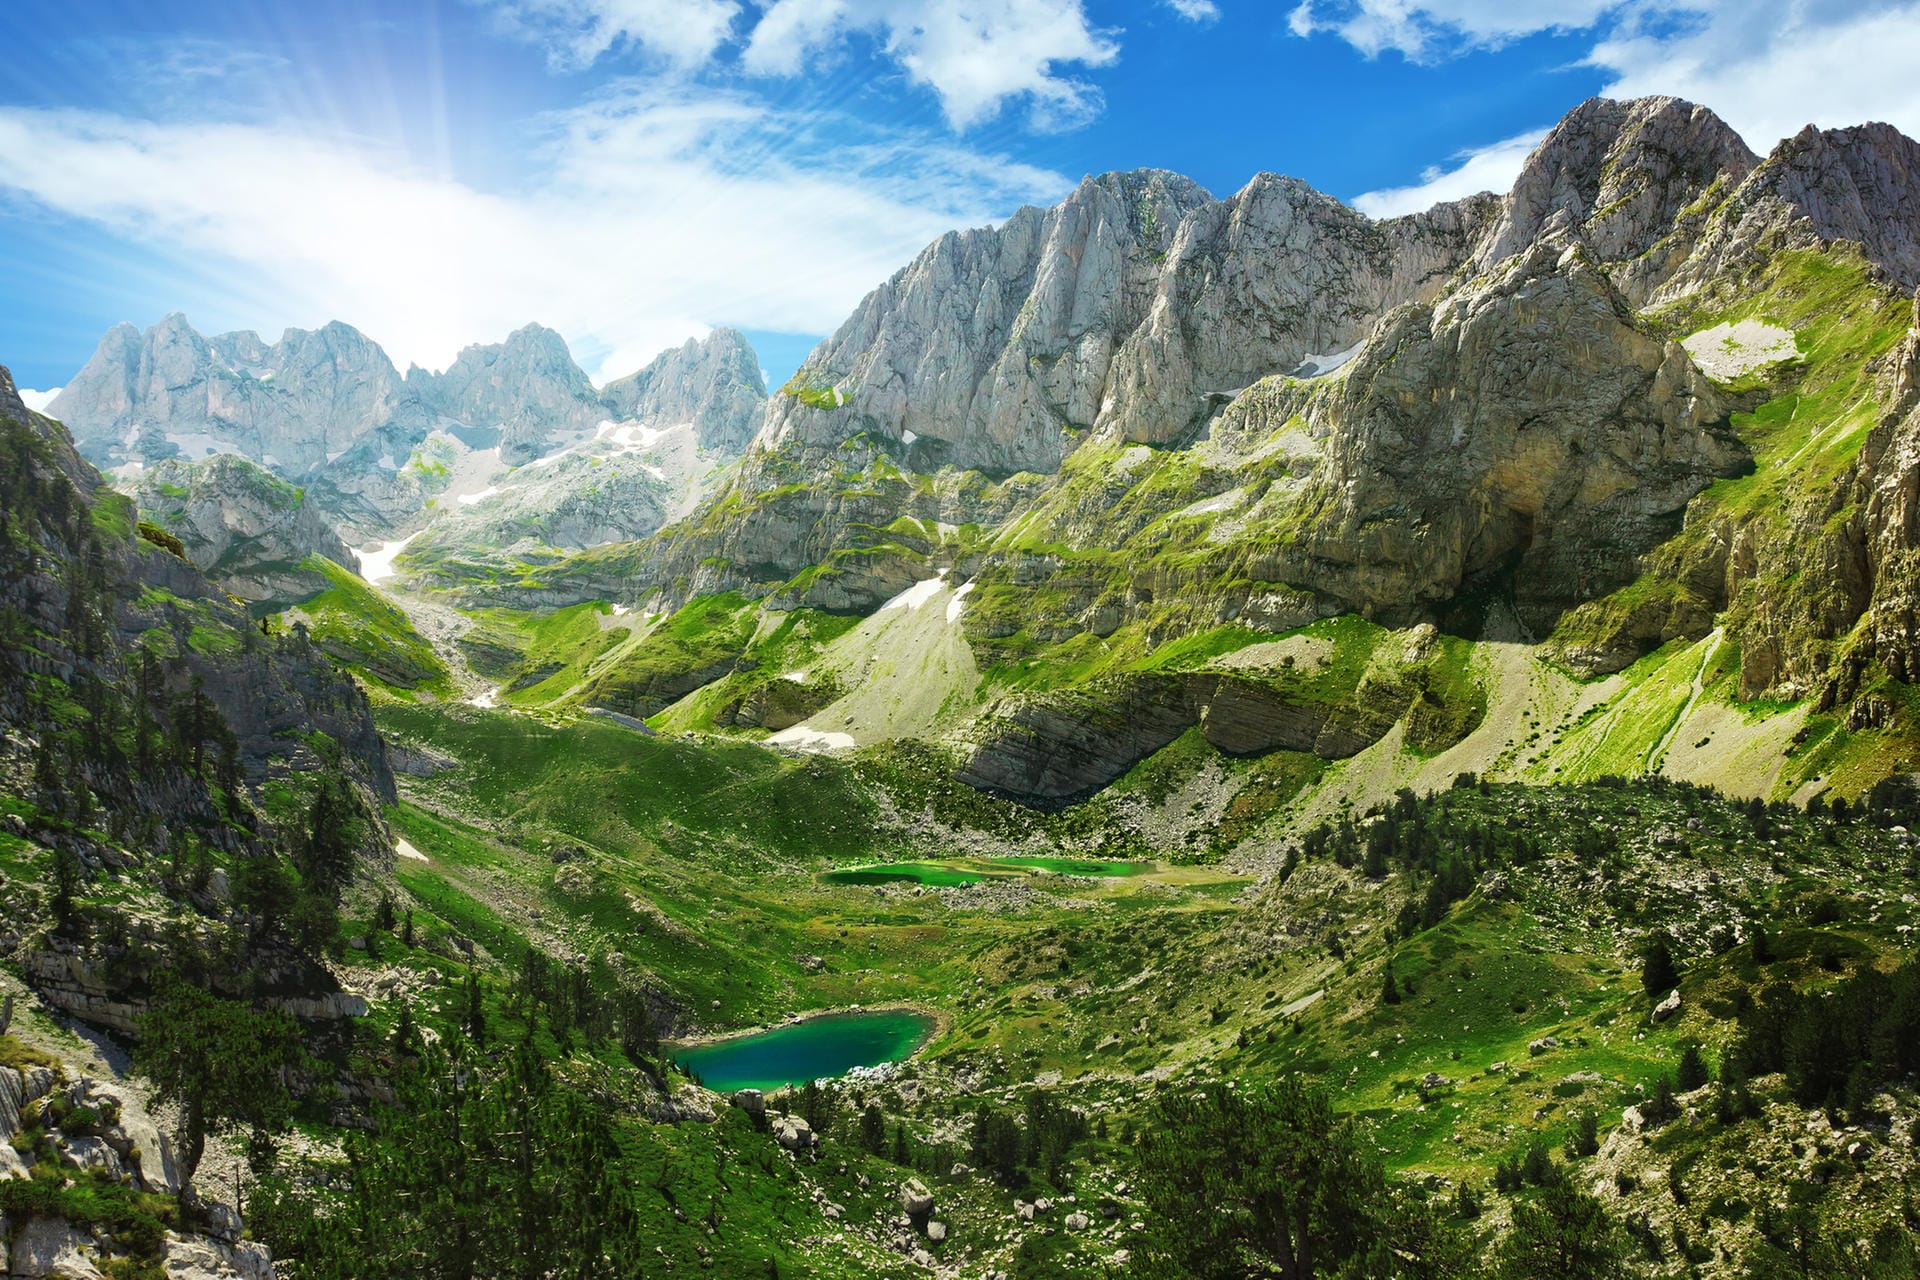 Unberührte Landschaft in Albanien: Bergseen und das Gebirgsmassiv Prokletije. Prokletije bedeutet "Verwunschene Berge". Sie werden auch die Albanischen Alpen genannt.